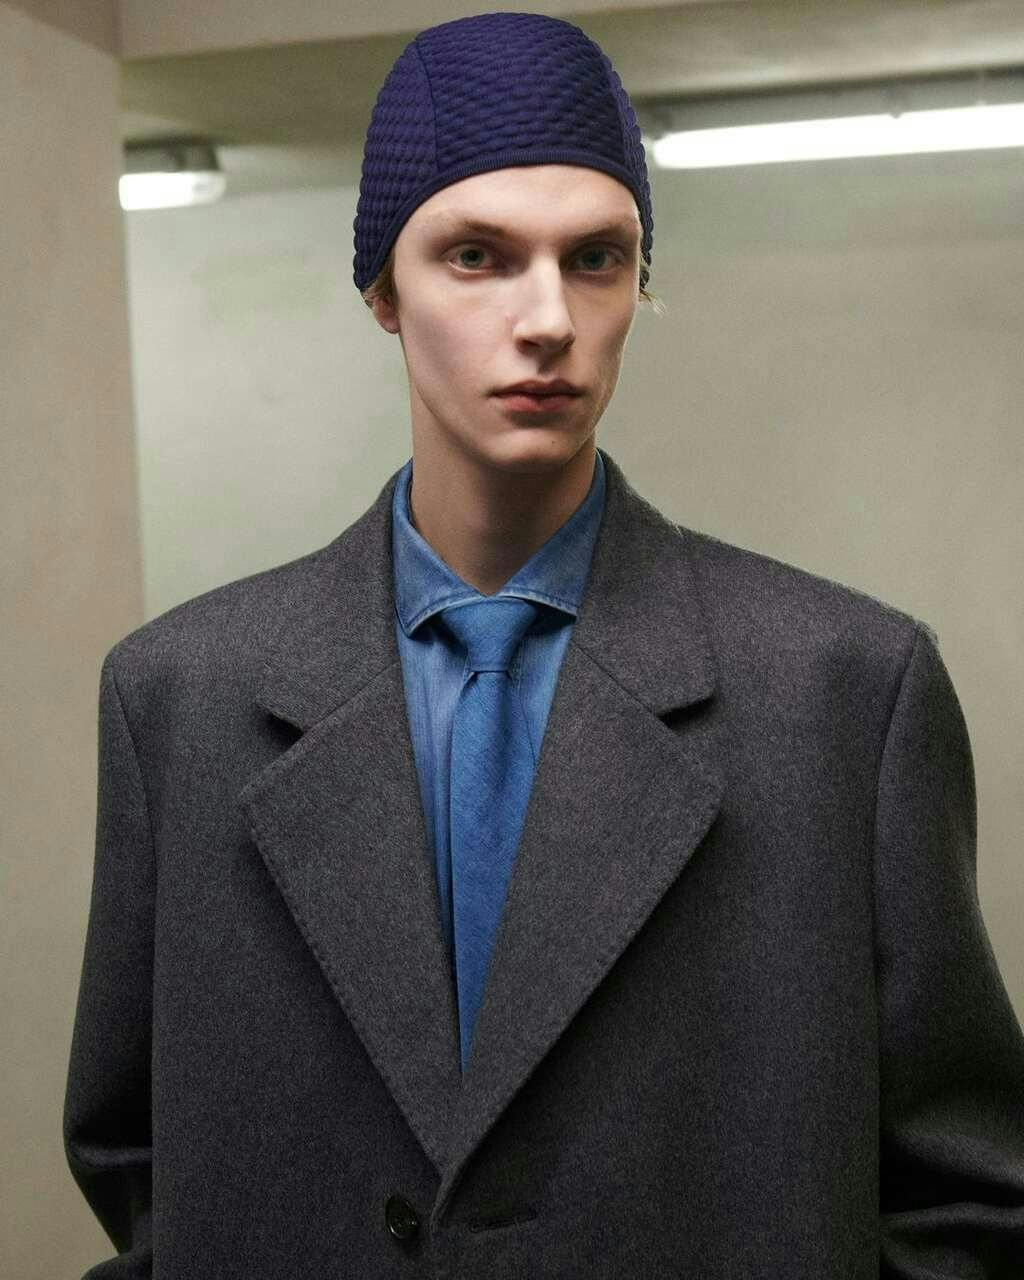 cap hat coat formal wear suit jacket adult male man person